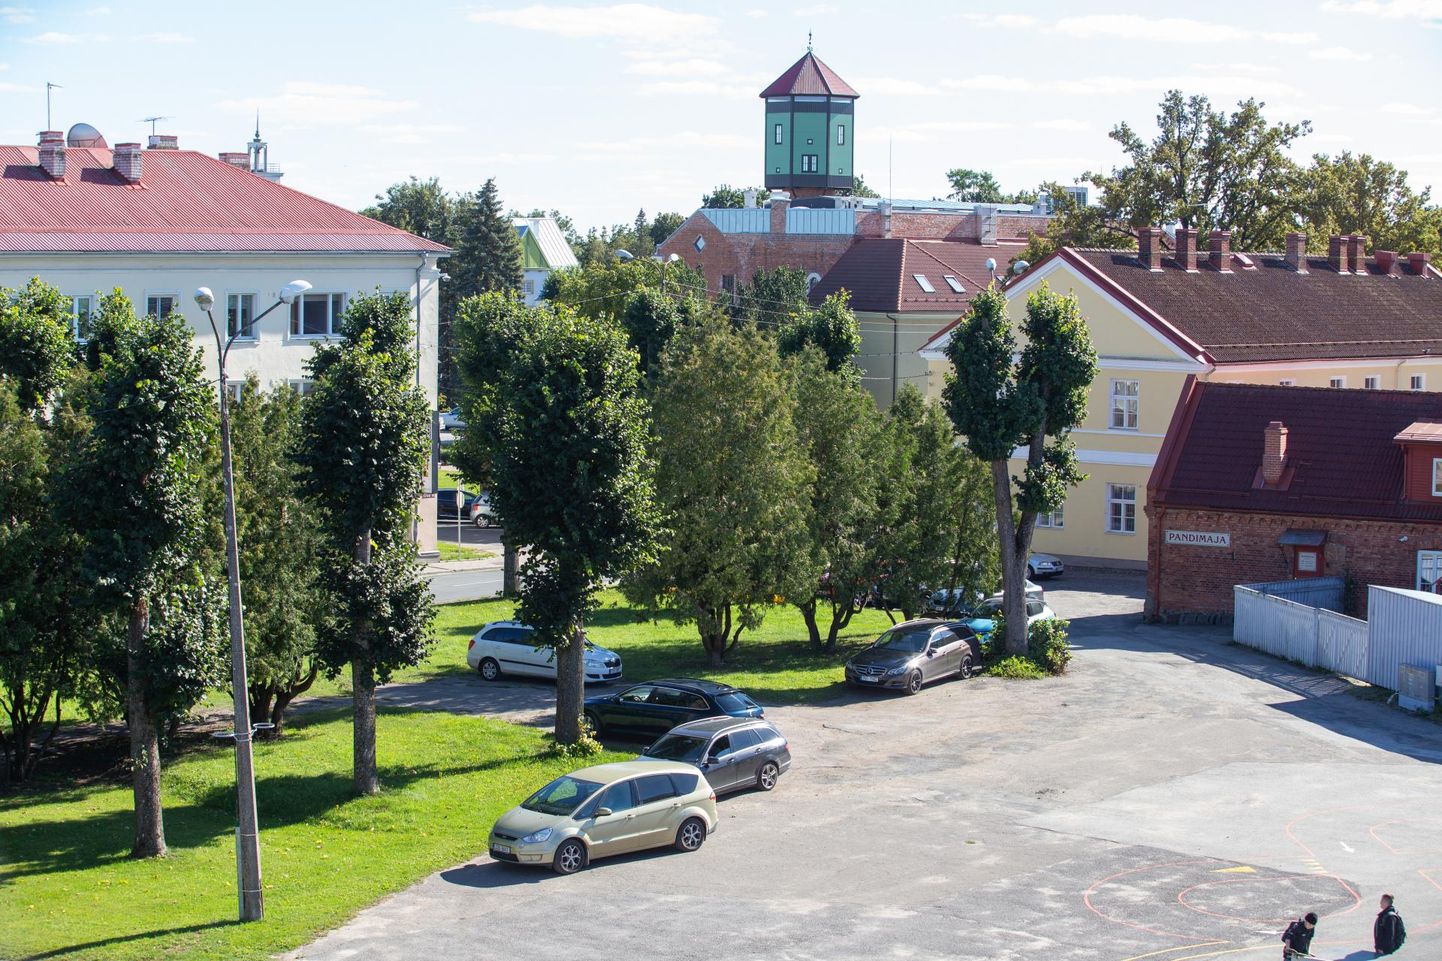 Viljandi vanalinna platsile, kus kunagi oli Rubiini kino, on autode sissesõit küll keelatud, aga üsna sageli võib neid seal parkimas näha. Väljapakutud idee kohaselt võikski sinna parkla ehitada.